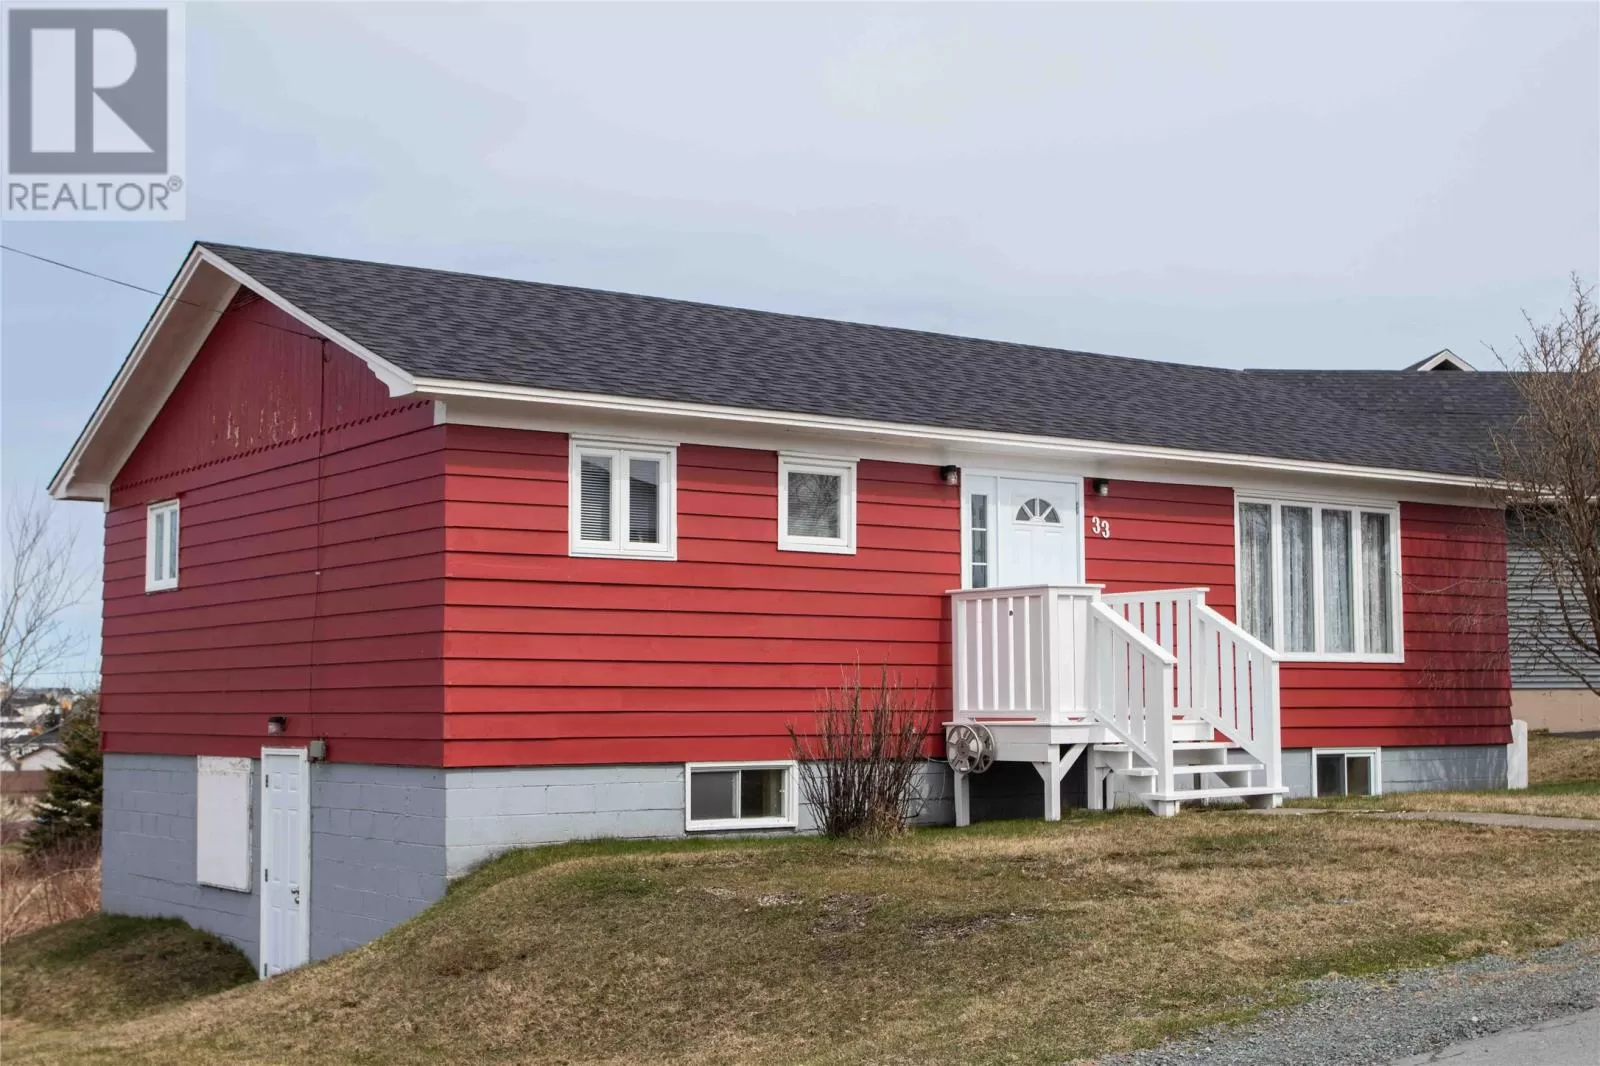 House for rent: 33 Groves Lane, Bonavista, Newfoundland & Labrador A0C 1B0